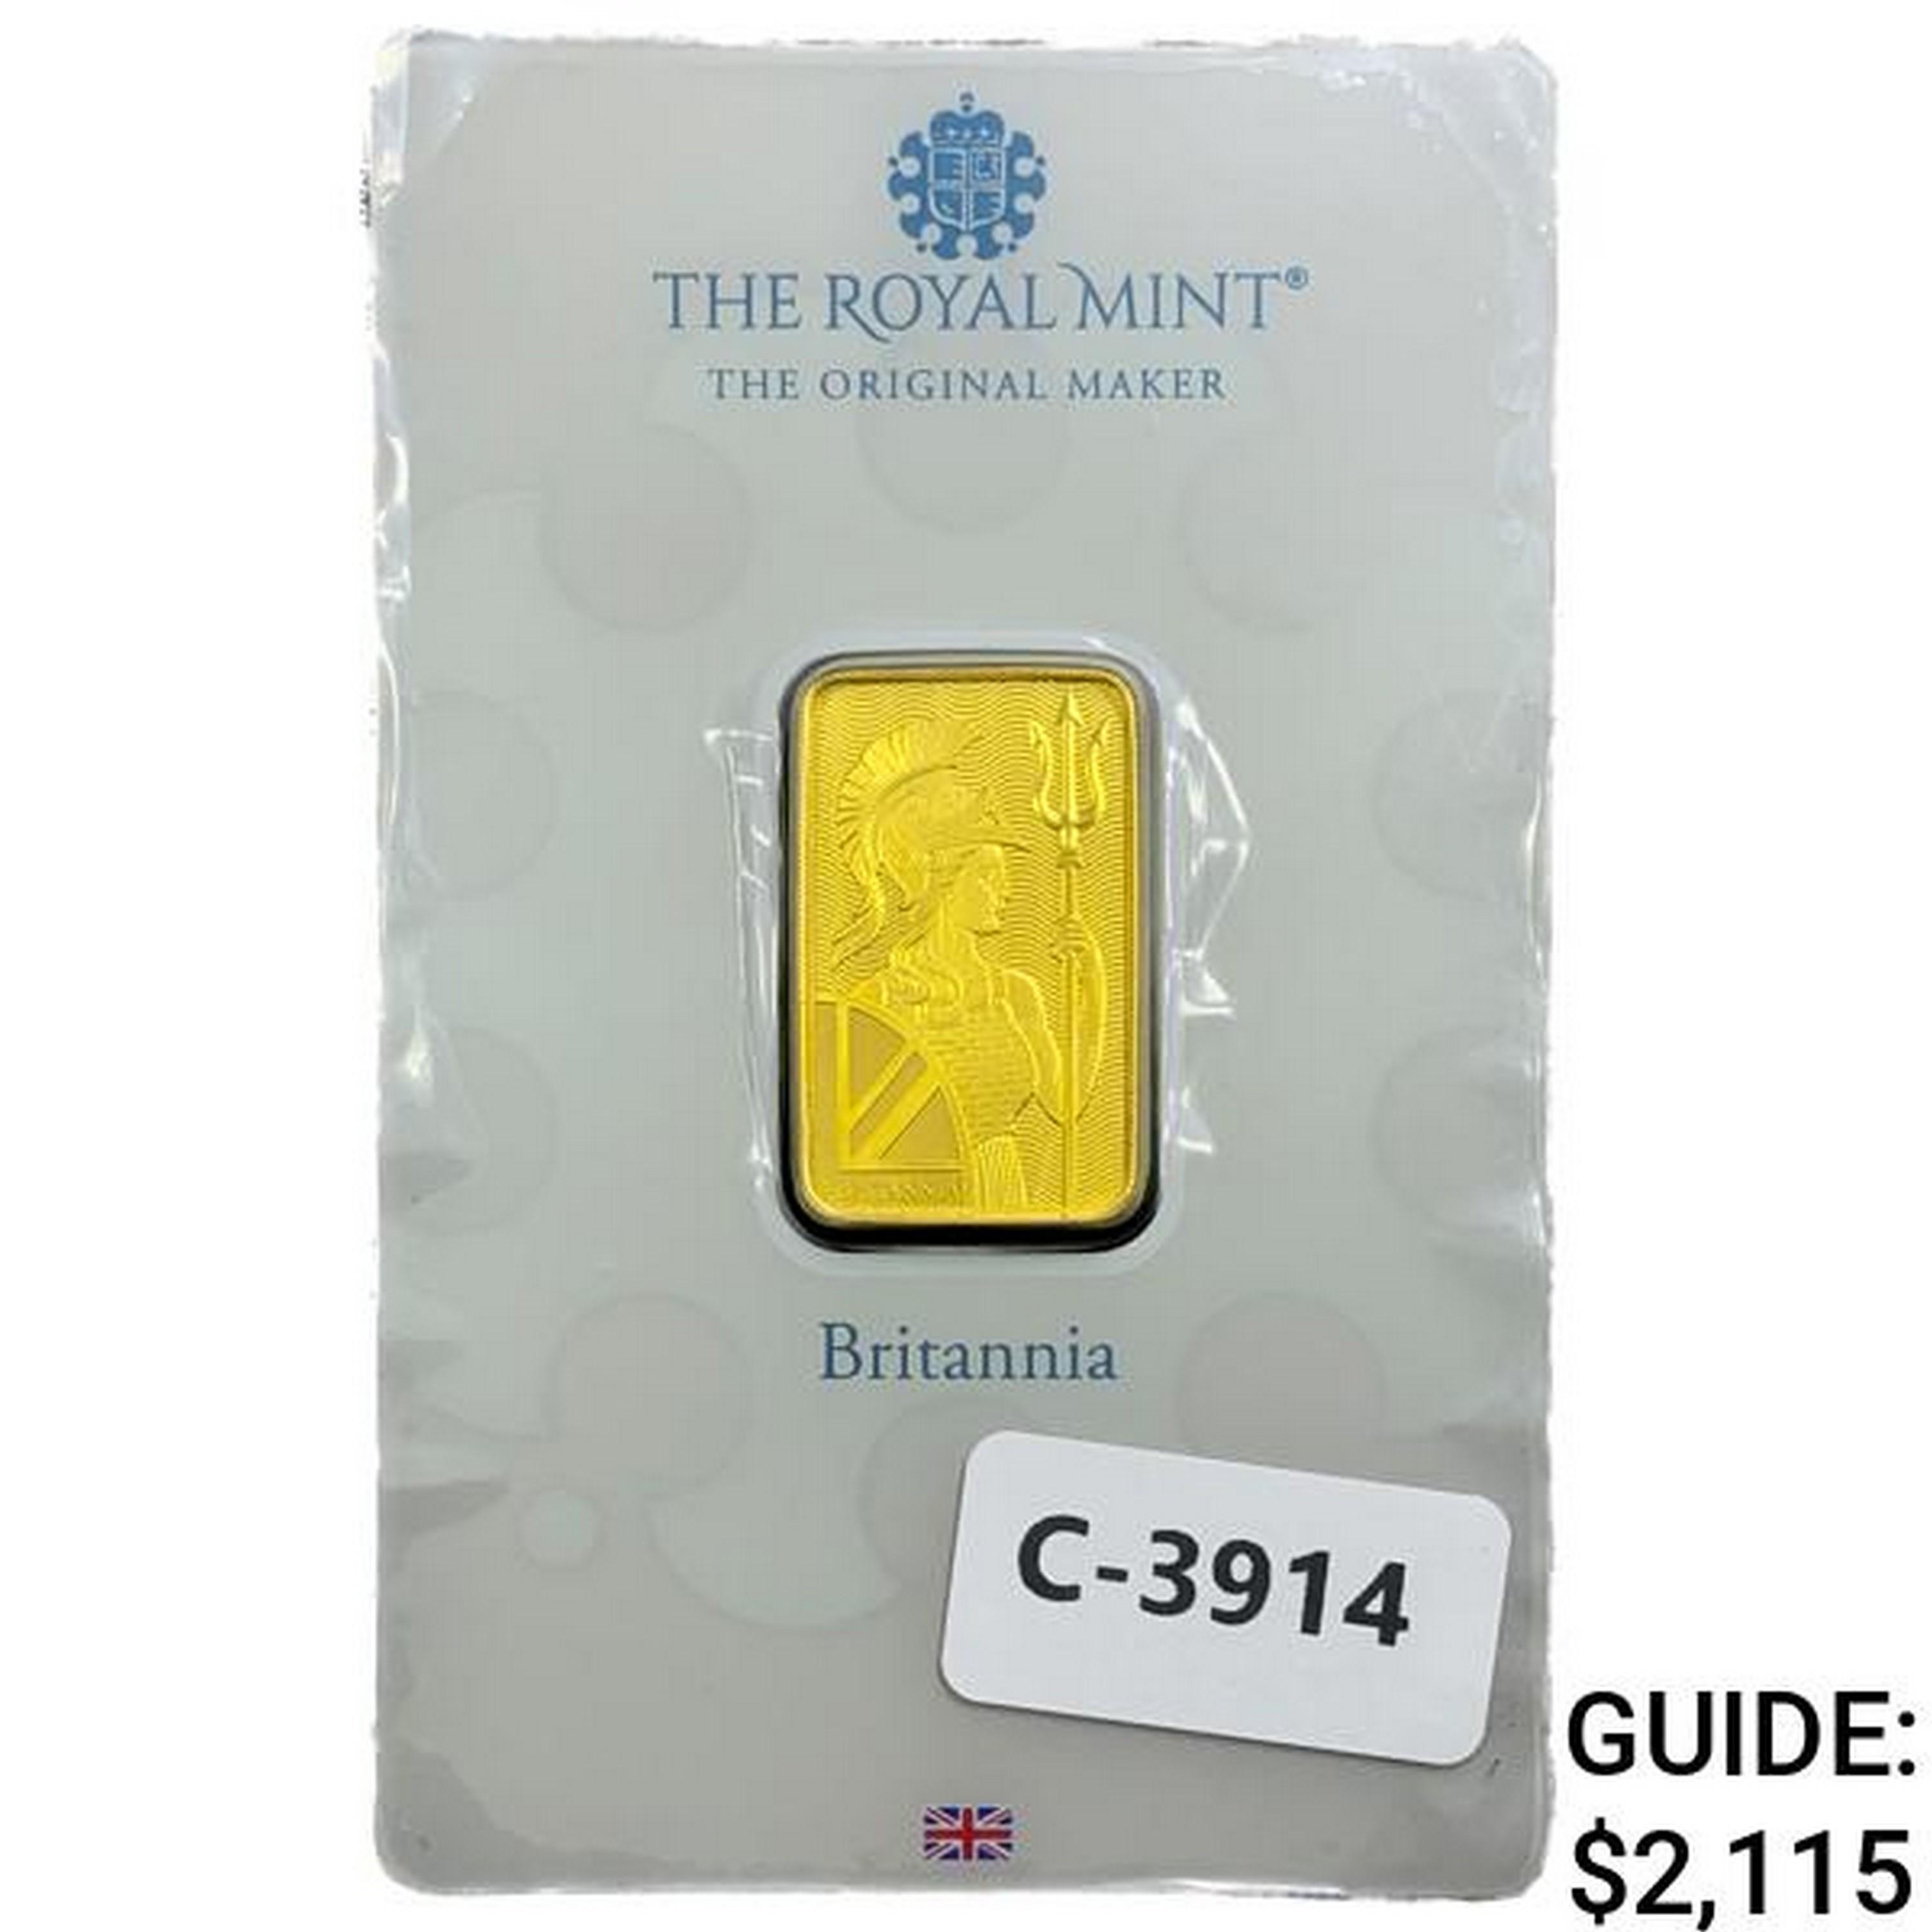 Britannia .35oz Gold Bar Royal Mint